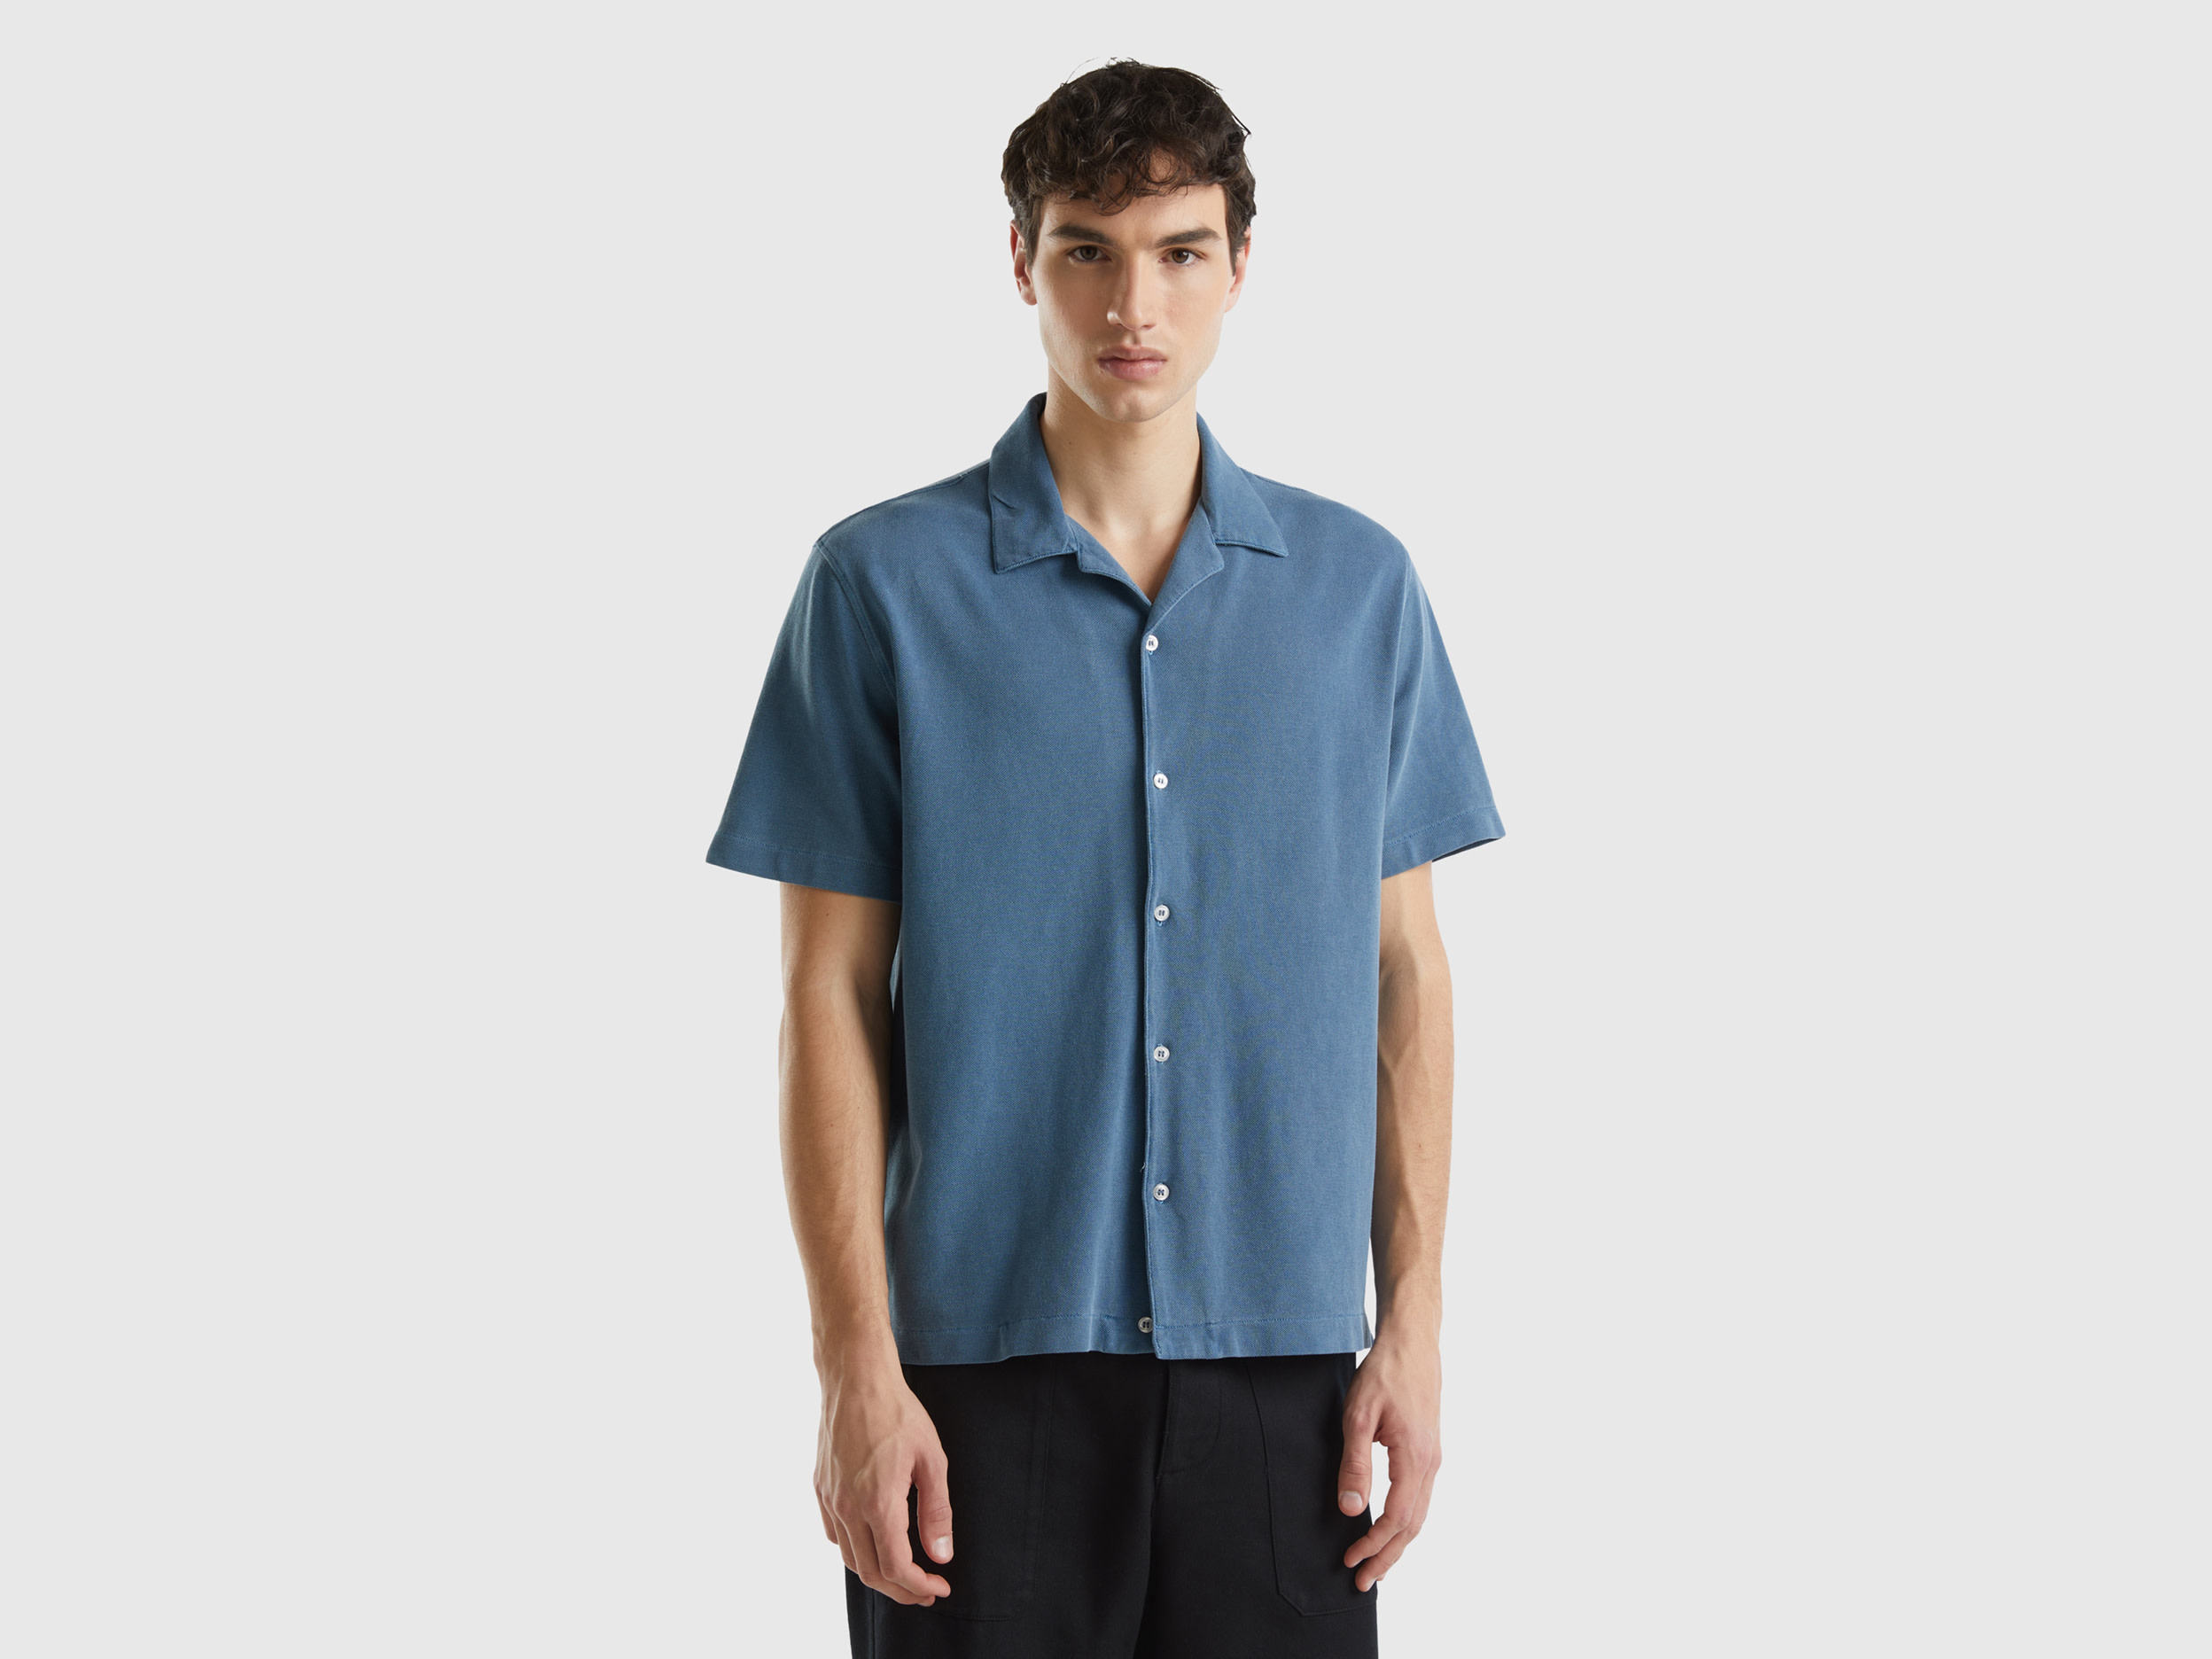 Image of Benetton, Organic Cotton Pique Shirt, size L, Air Force Blue, Men